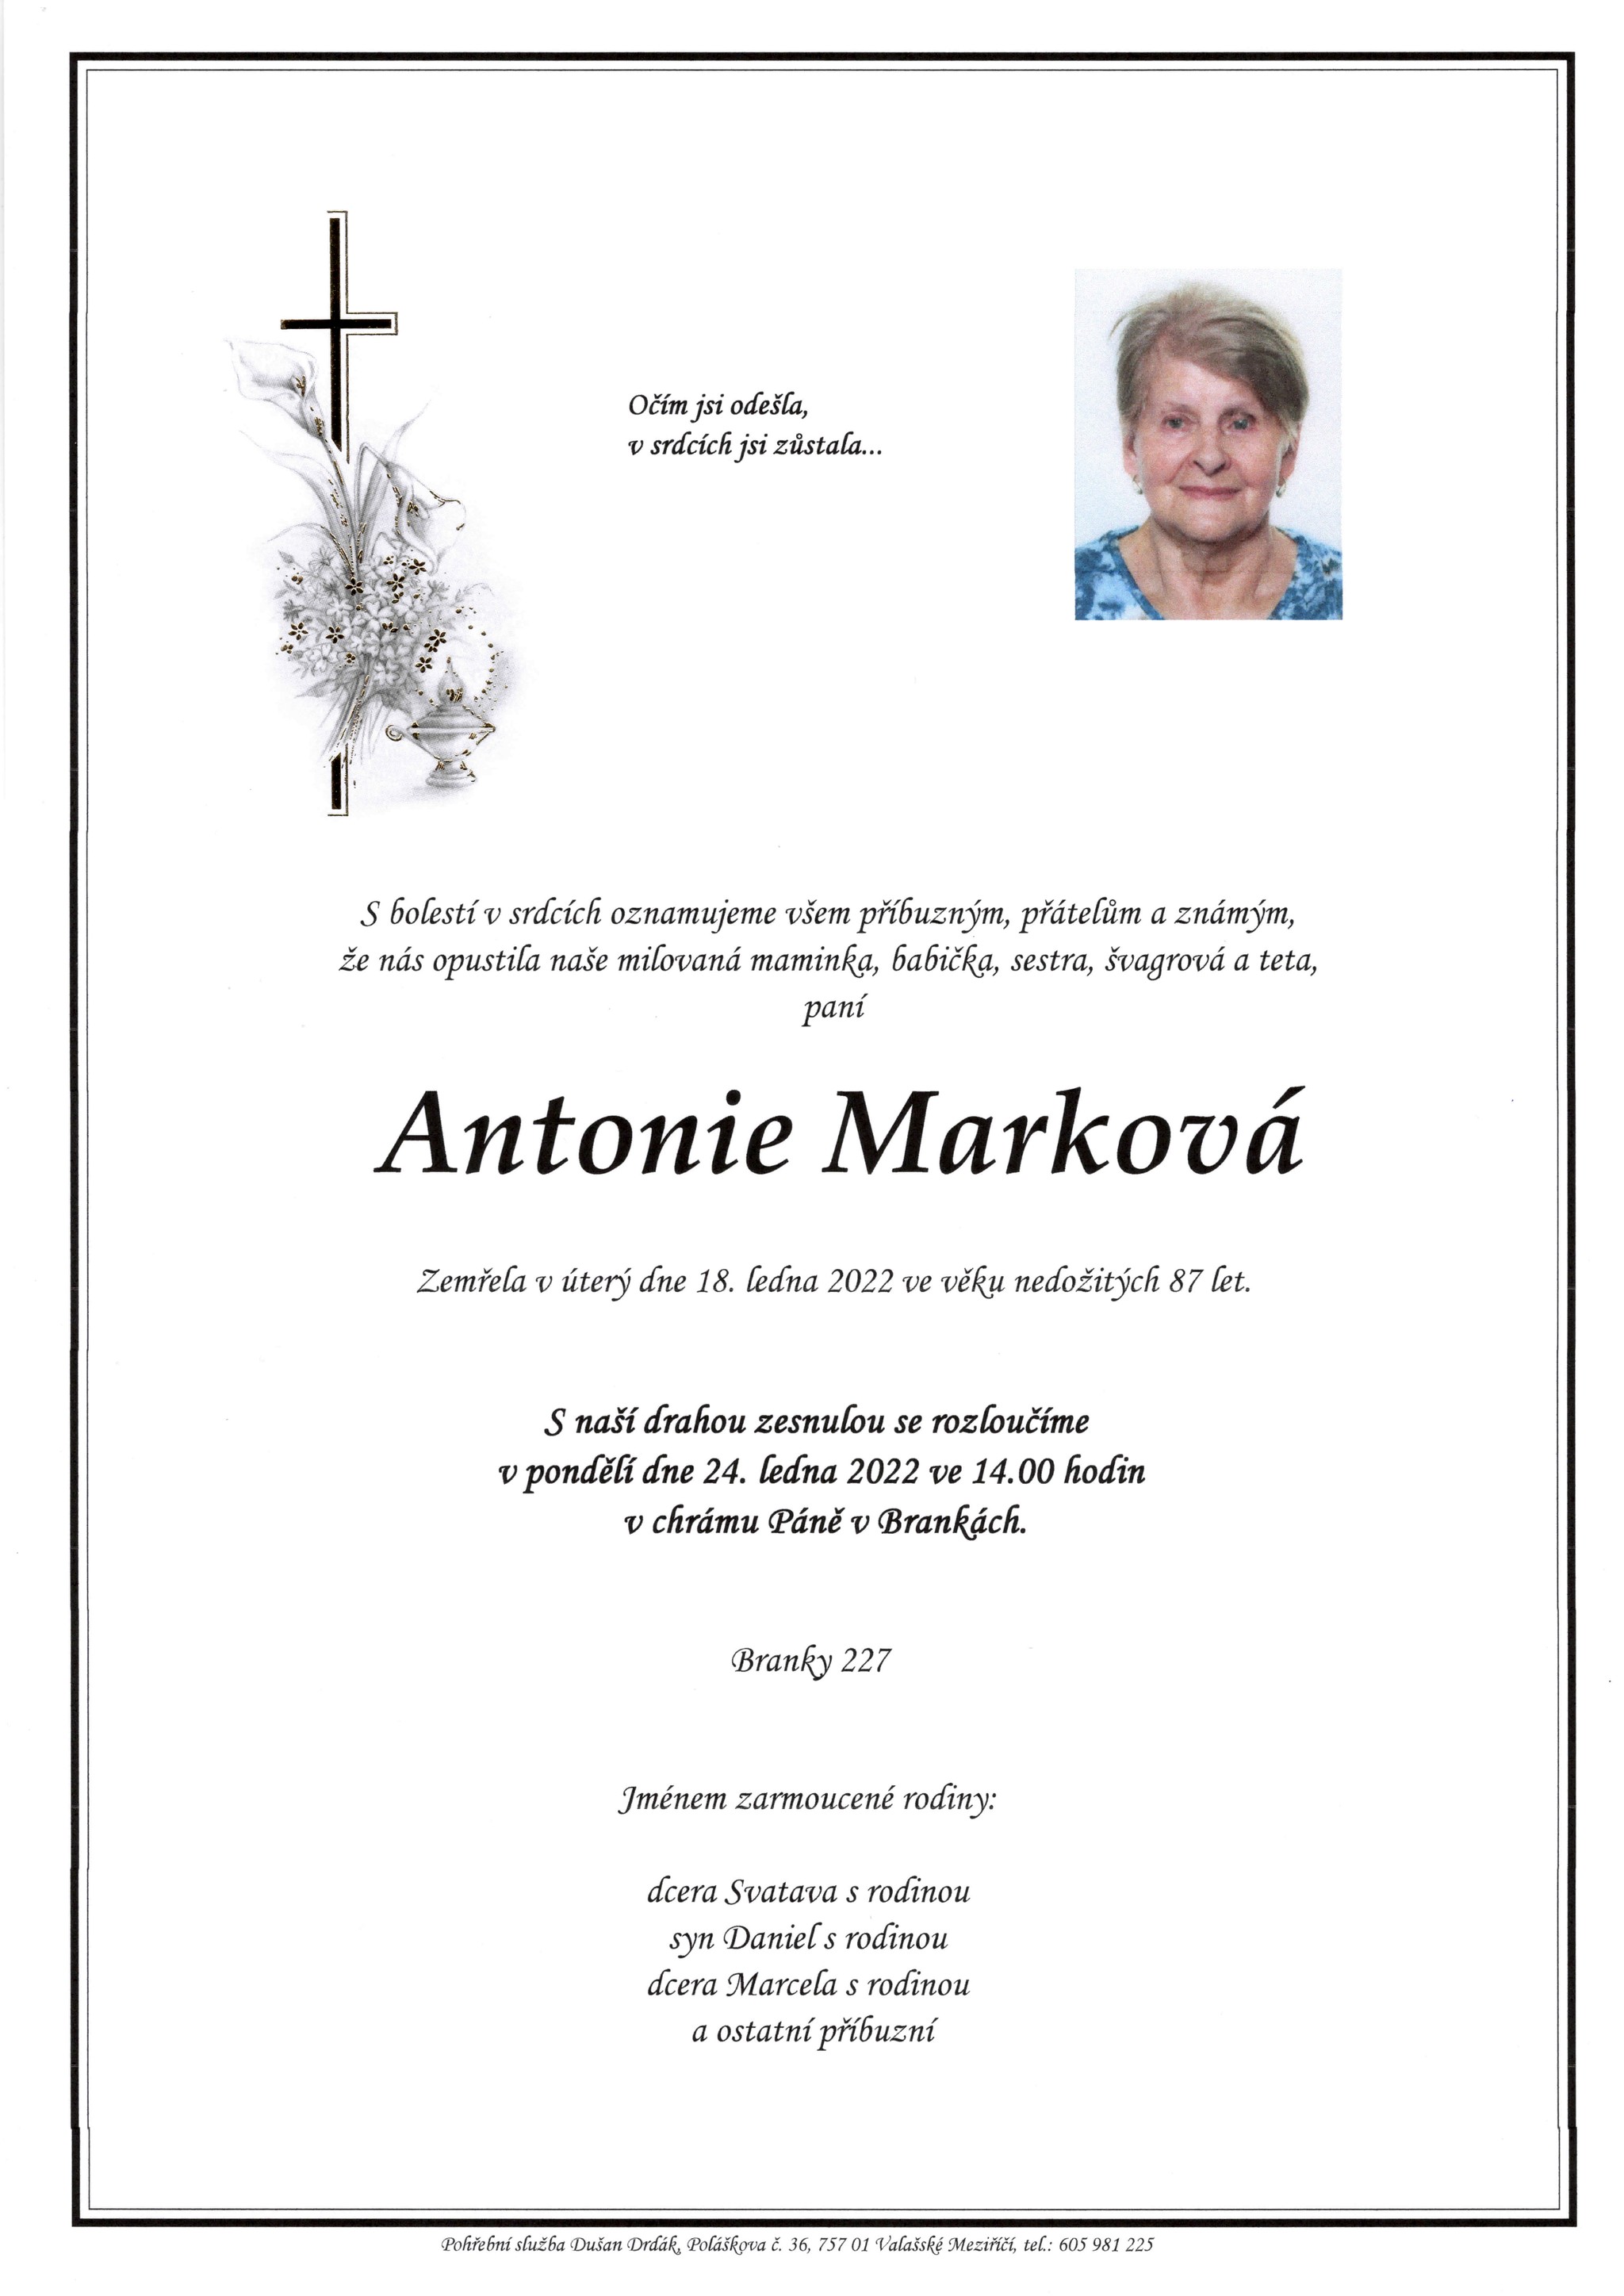 Antonie Marková